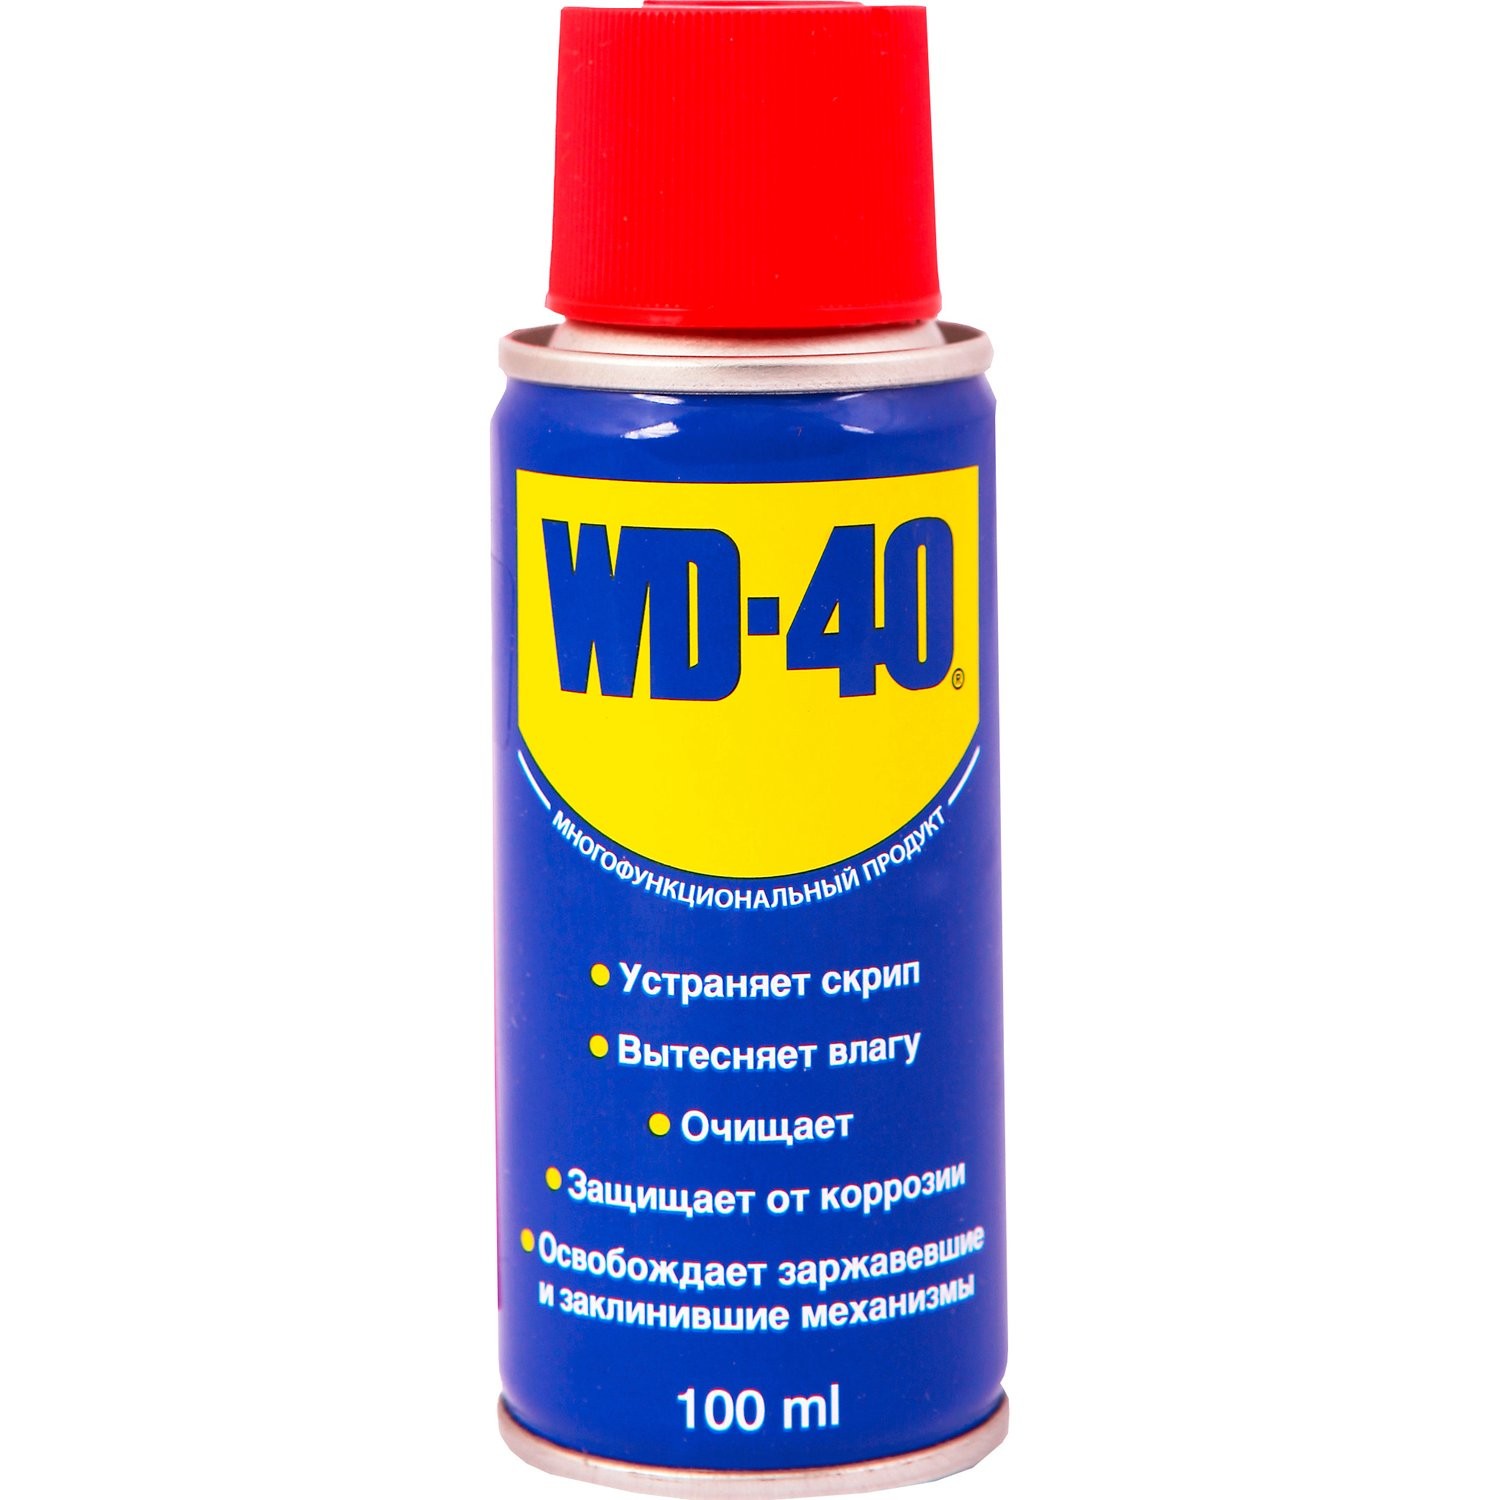 WD-40 - 100 ml univerzálne mazivo, 1 x WD-40 - 100 ml univerzálne mazivo, WD40 - 100 ml univerzálne mazivo, WD 40 - 100 ml univerzálne mazivo